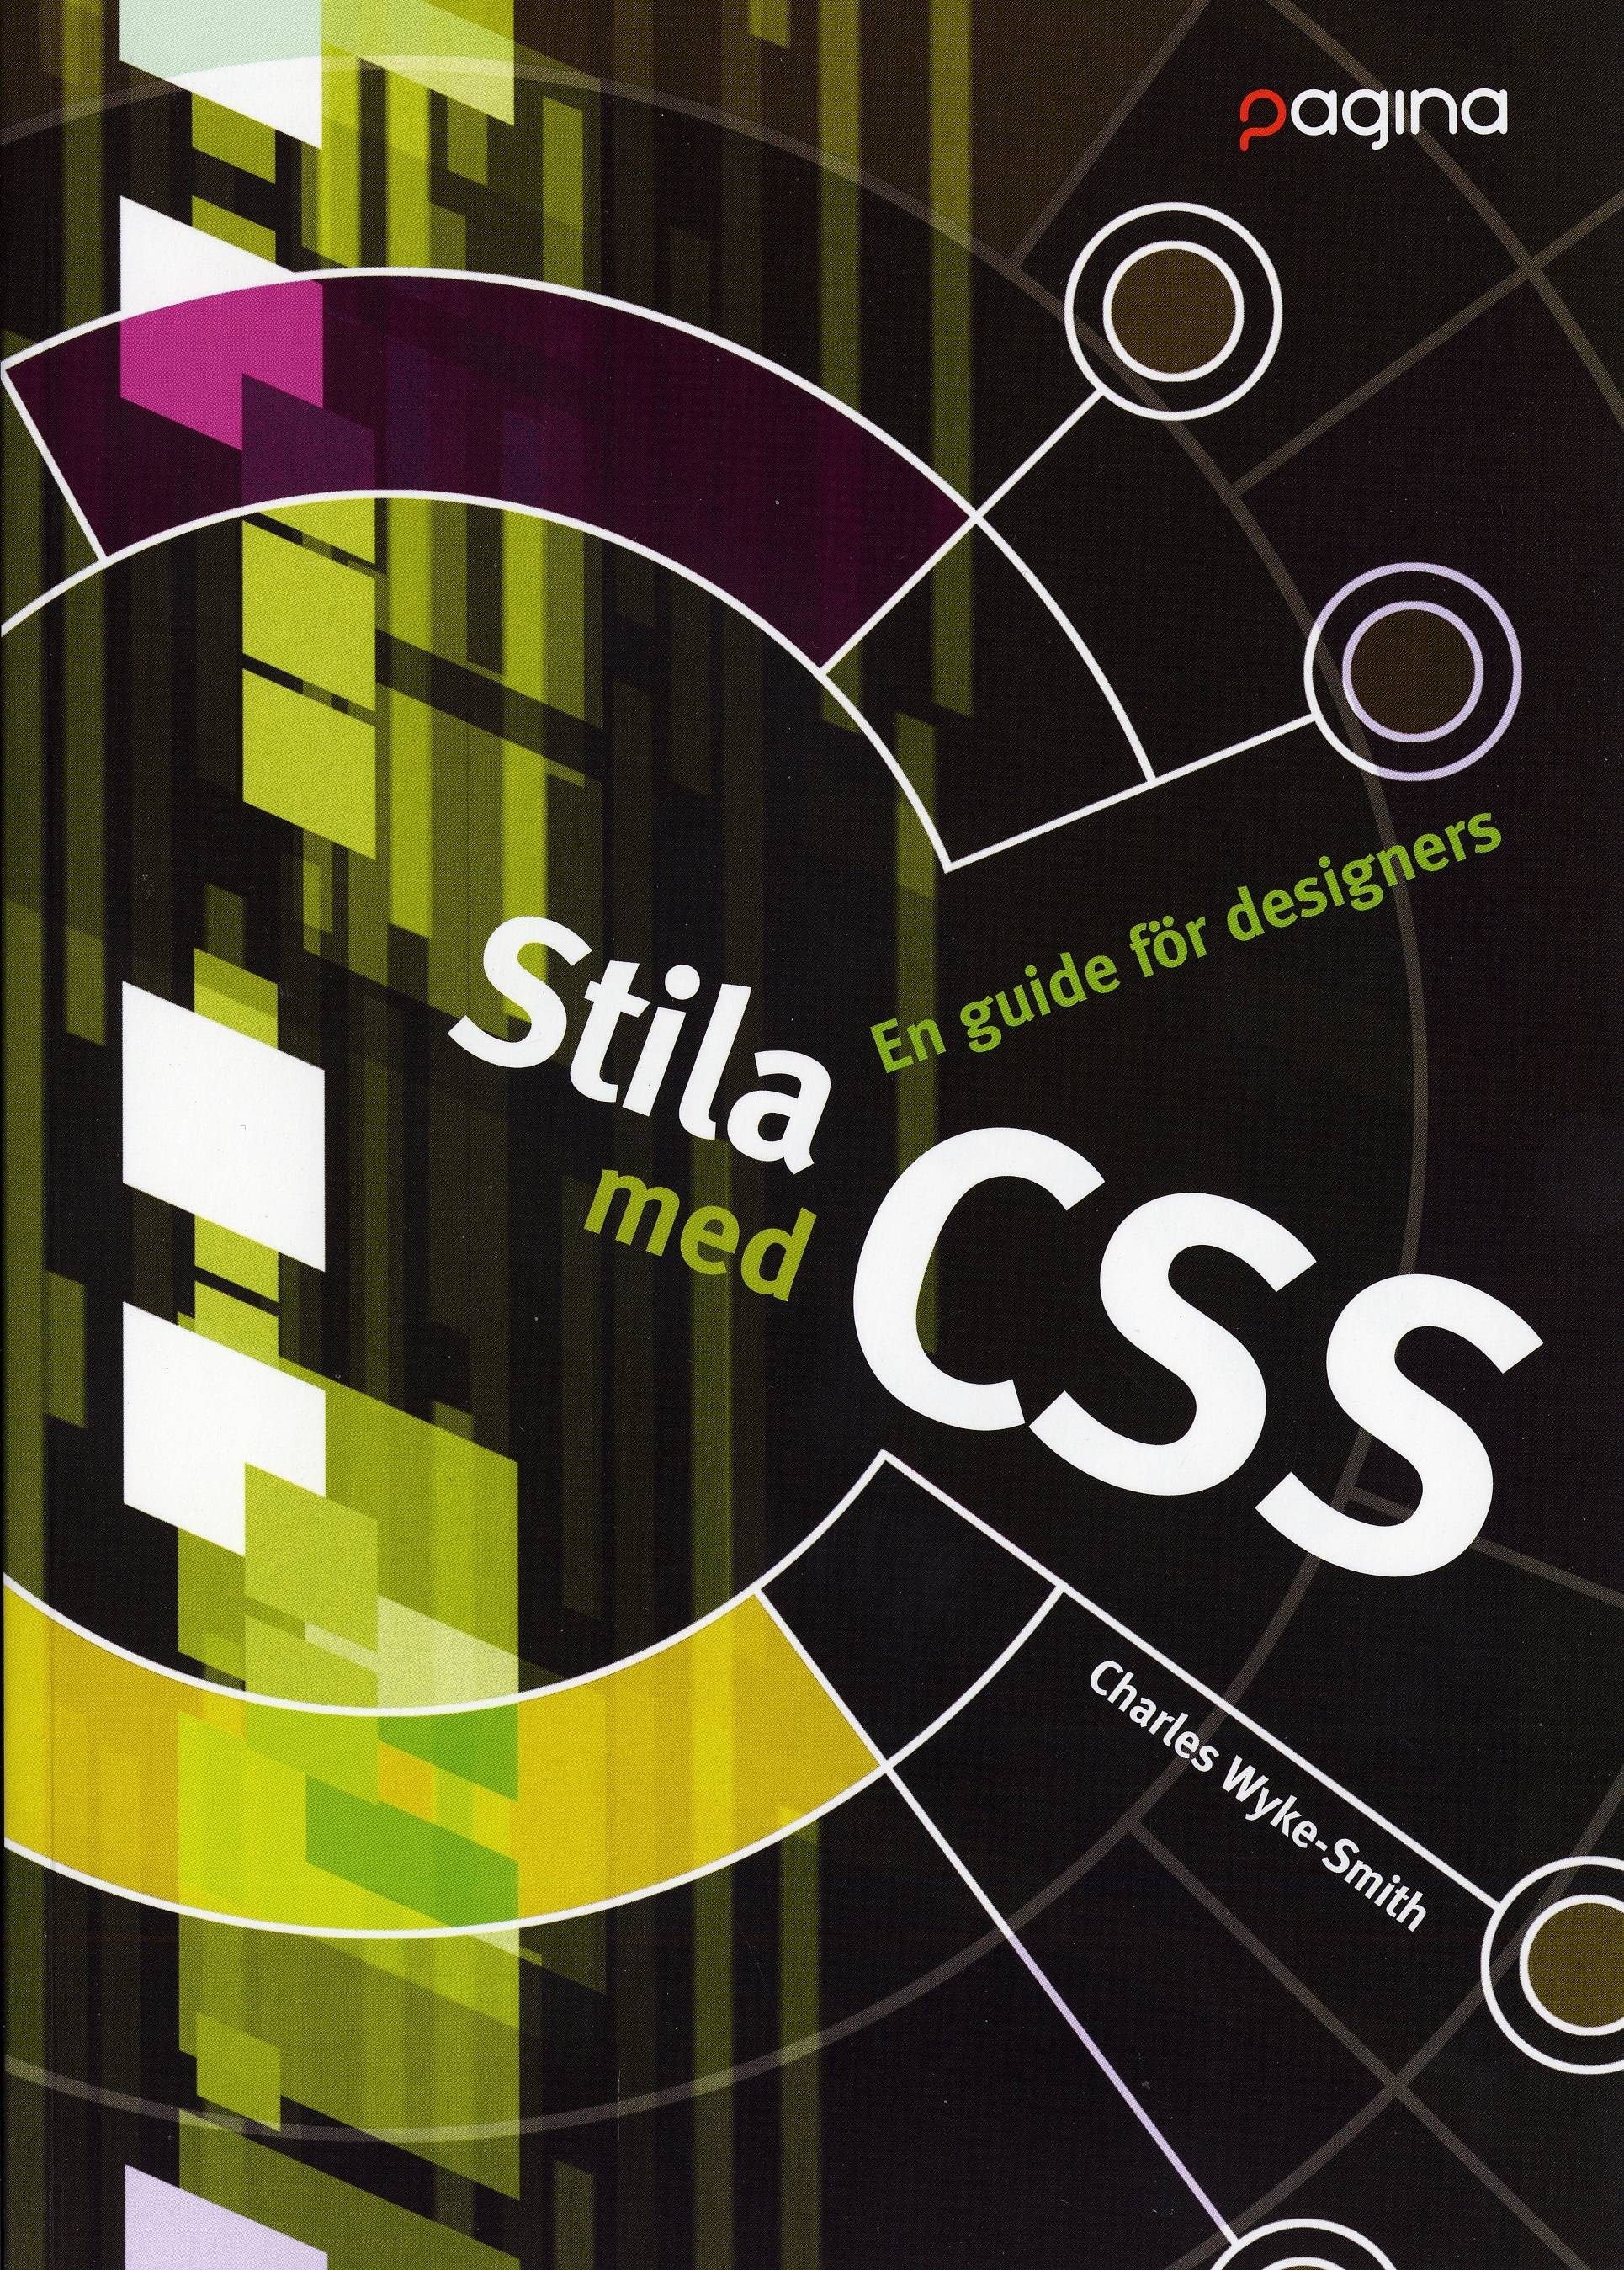 Stila med CSS - En guide för designers